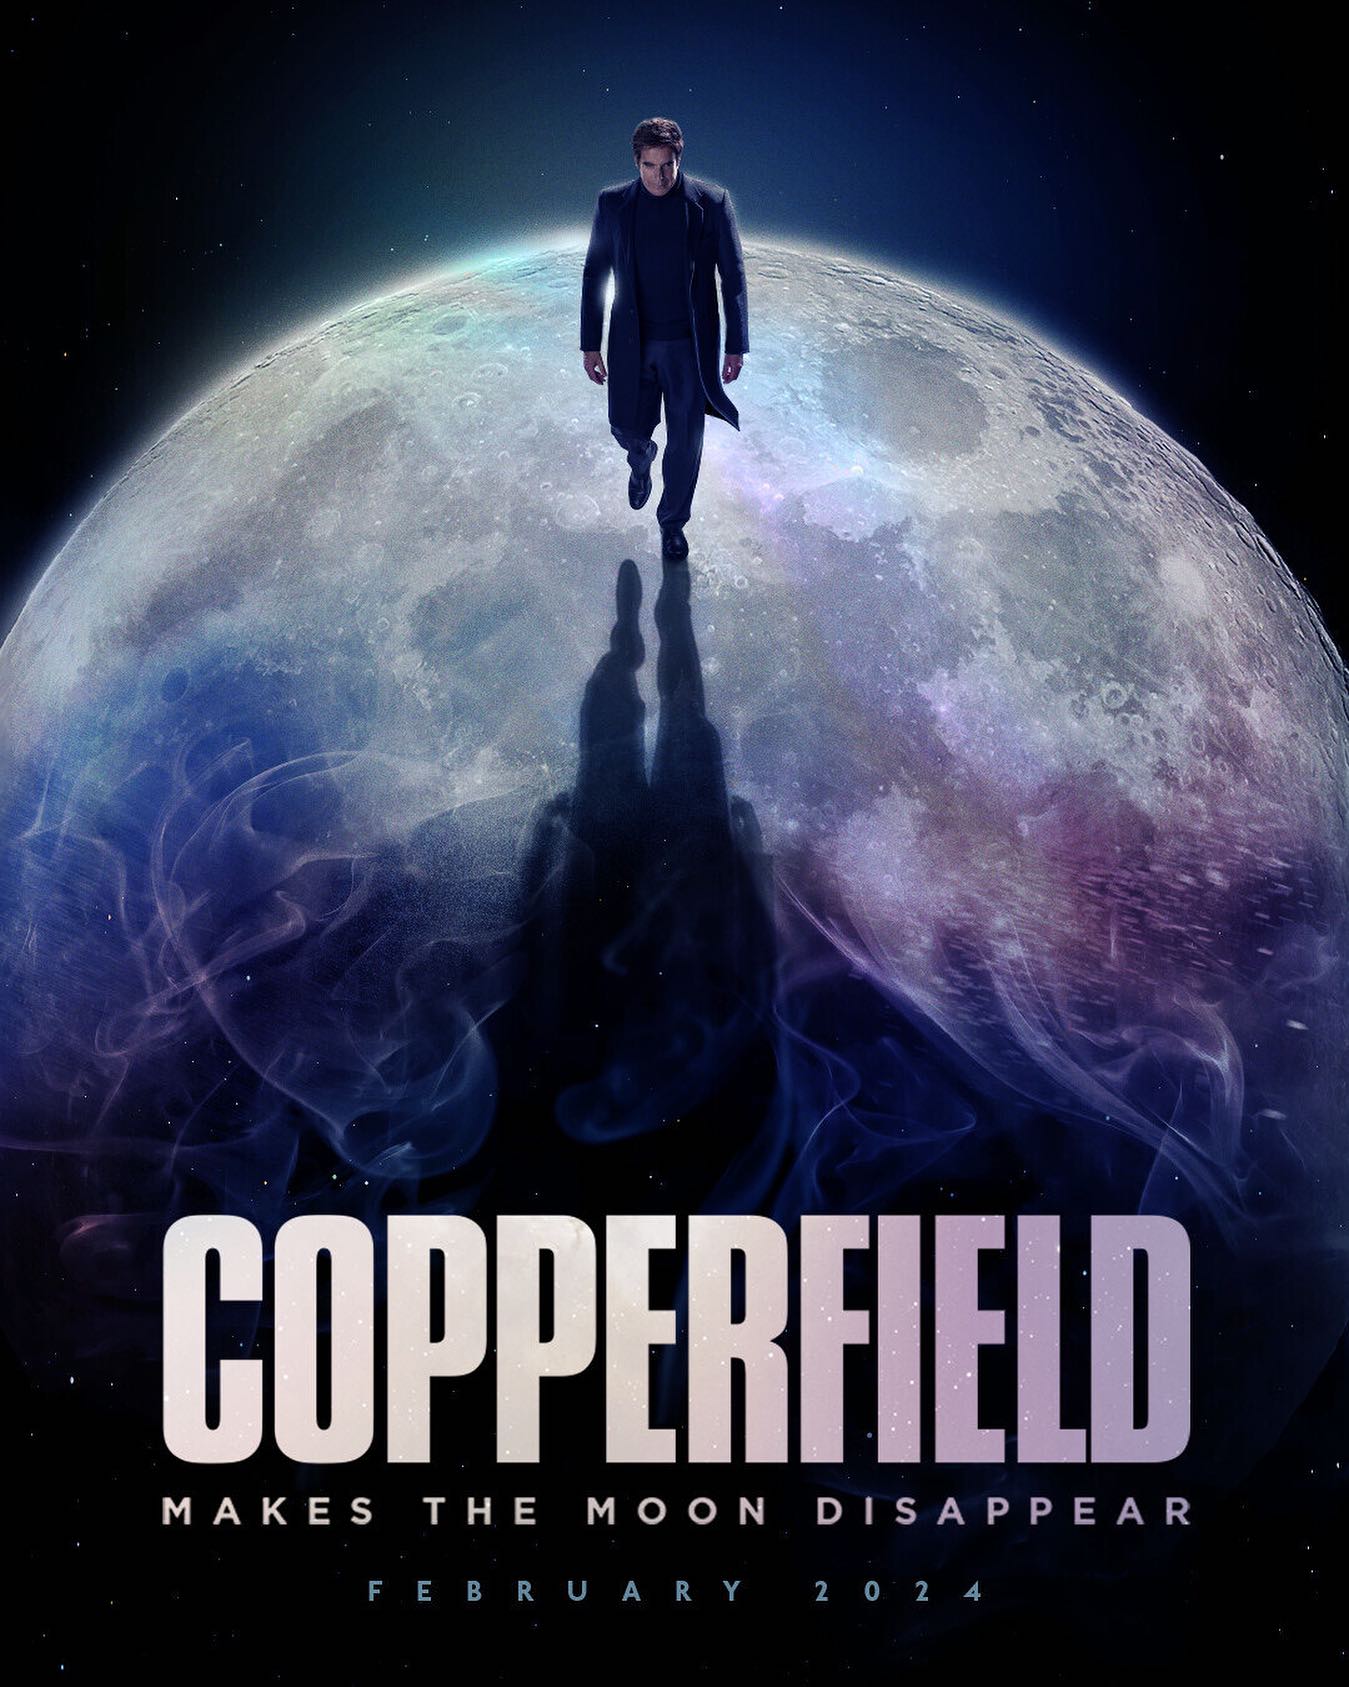 David Copperfield chơi lớn với màn ảo thuật làm mặt trăng biến mất, dành hơn 30 năm để chuẩn bị - Ảnh 1.